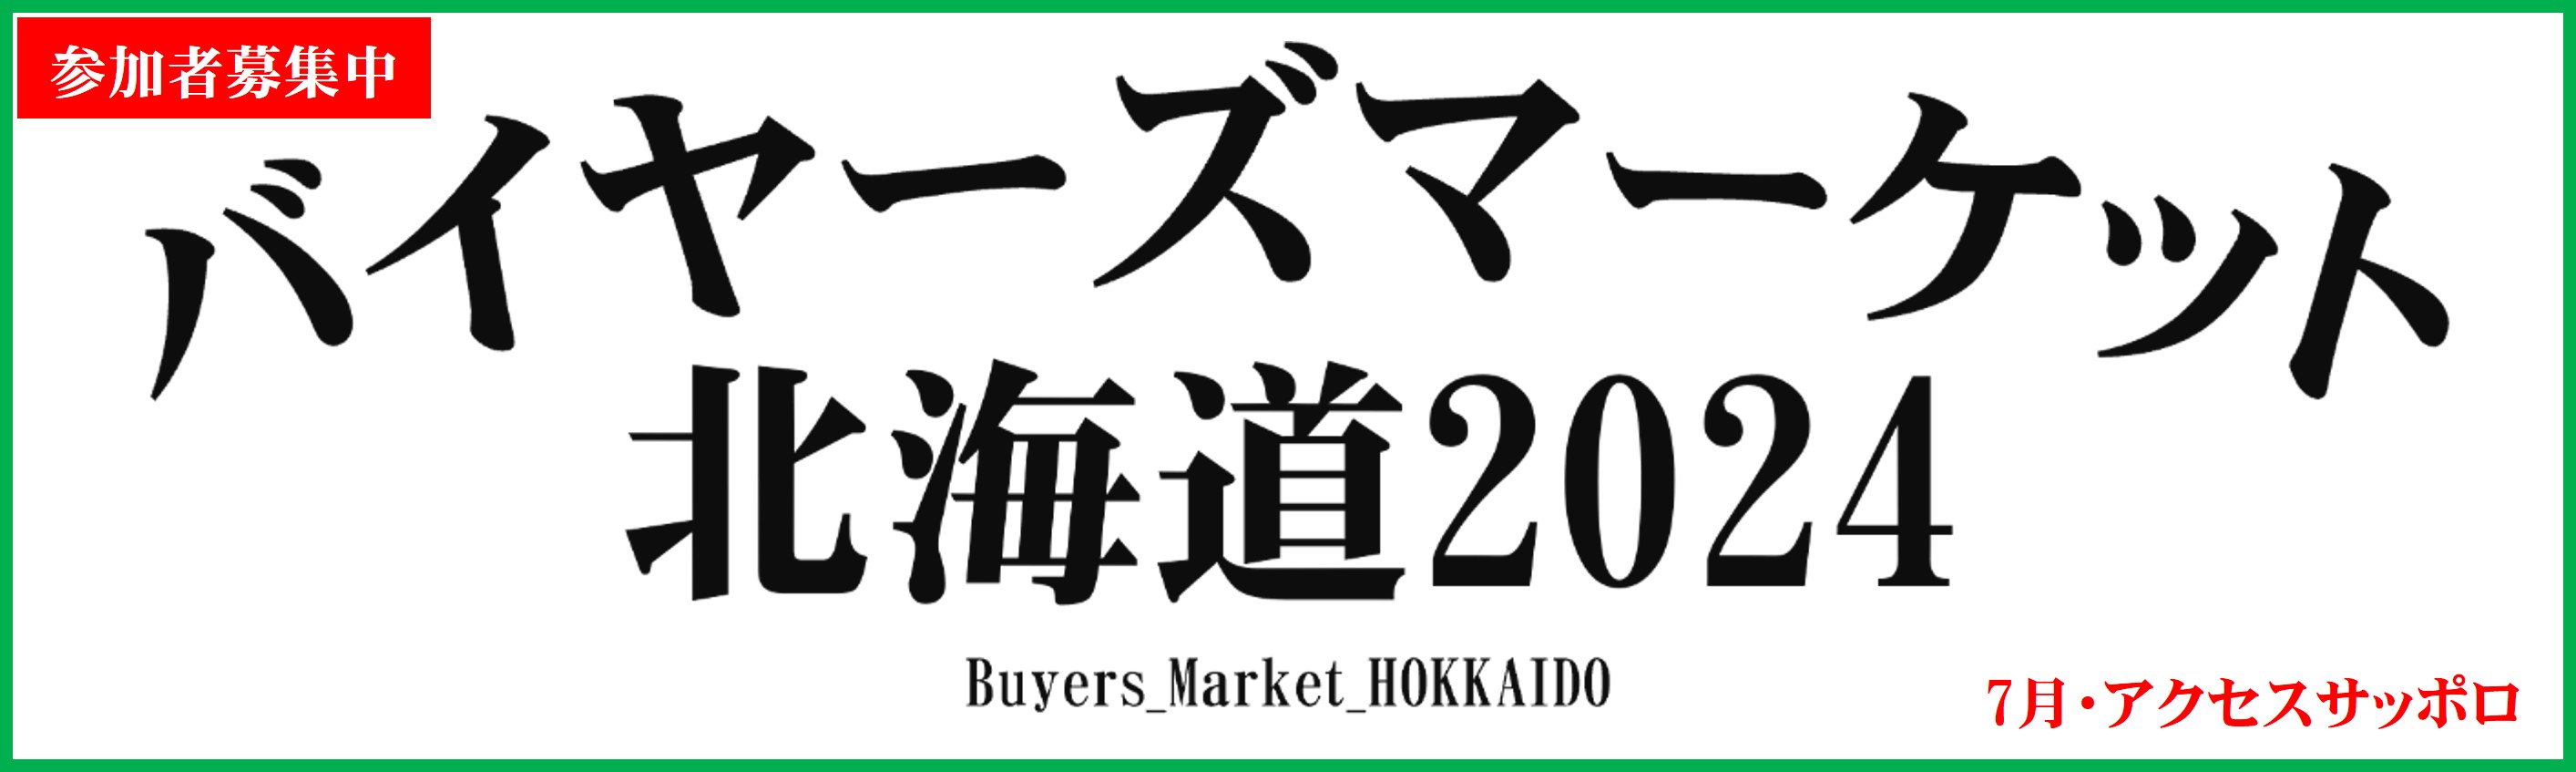 バイヤーズマーケット北海道2024